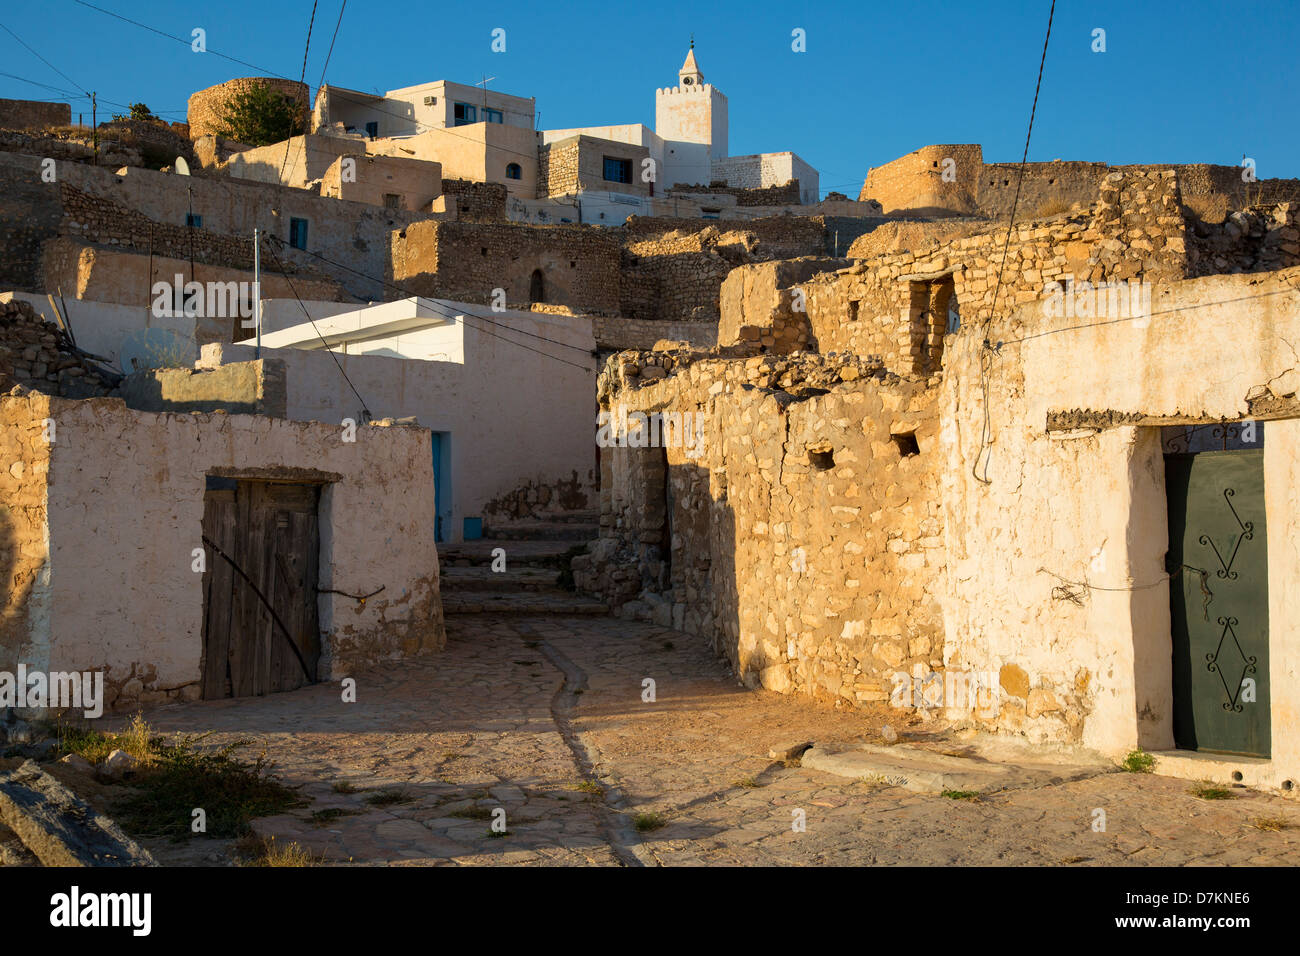 Village de Tamezret Matmata, près de la Tunisie Banque D'Images